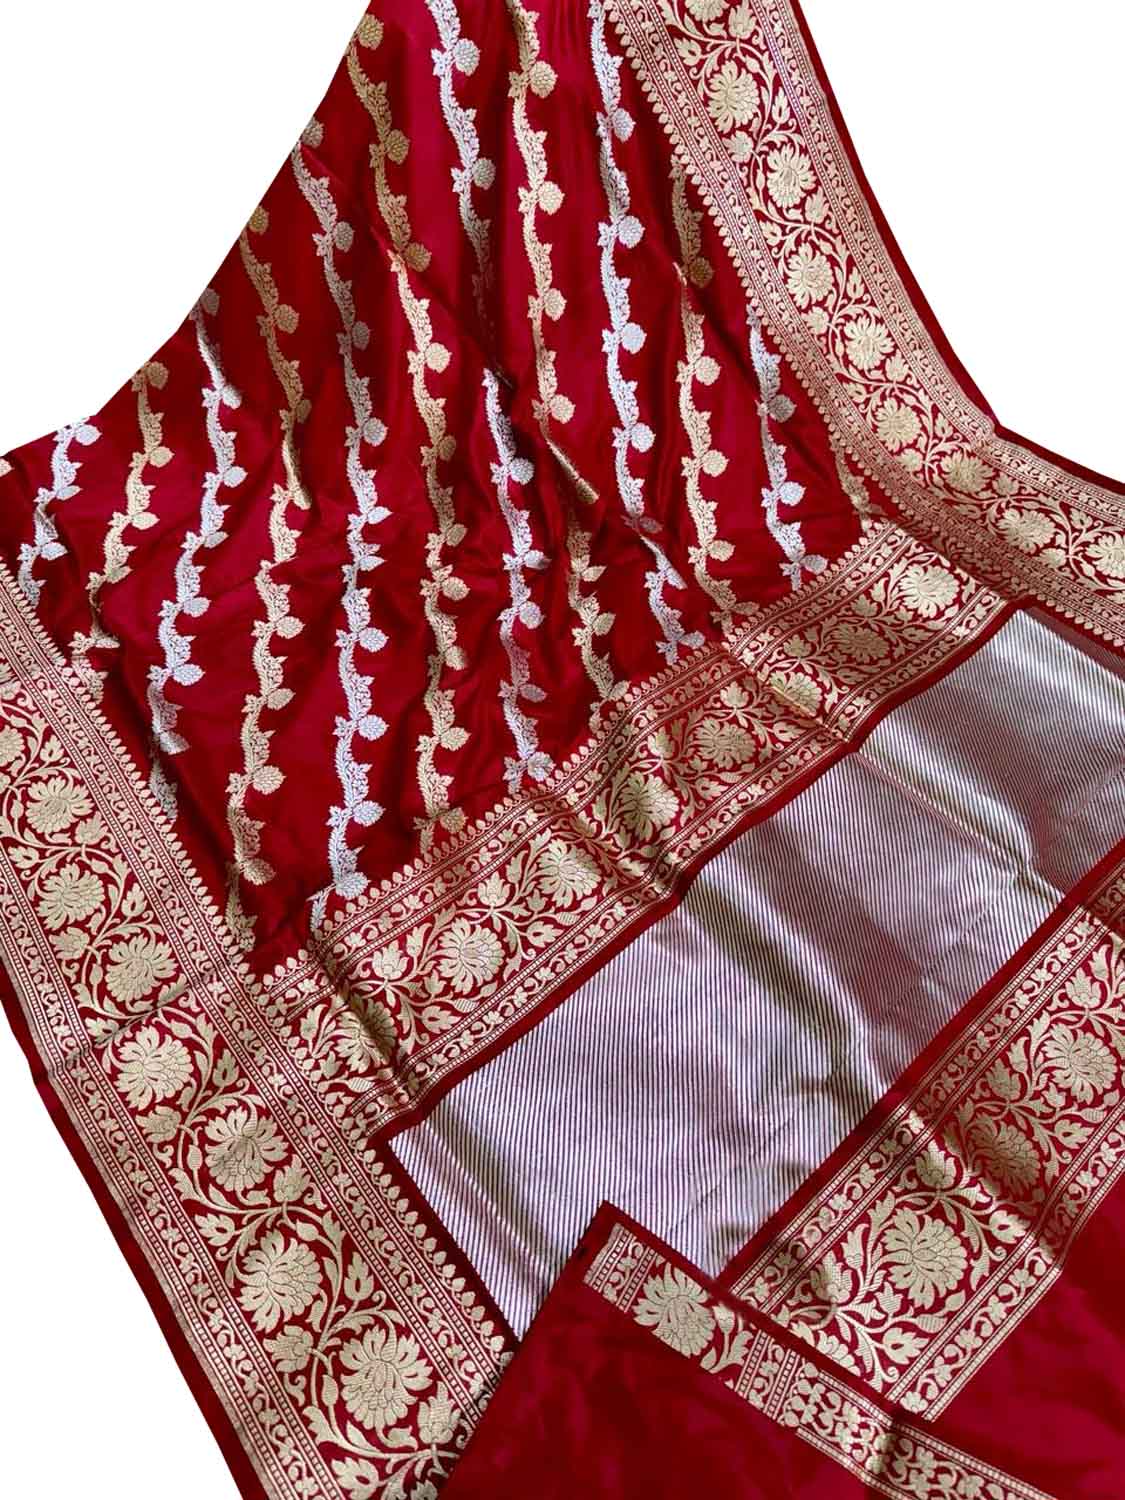 Luxurious Red Banarasi Silk Saree with Diagonal Design - Luxurion World